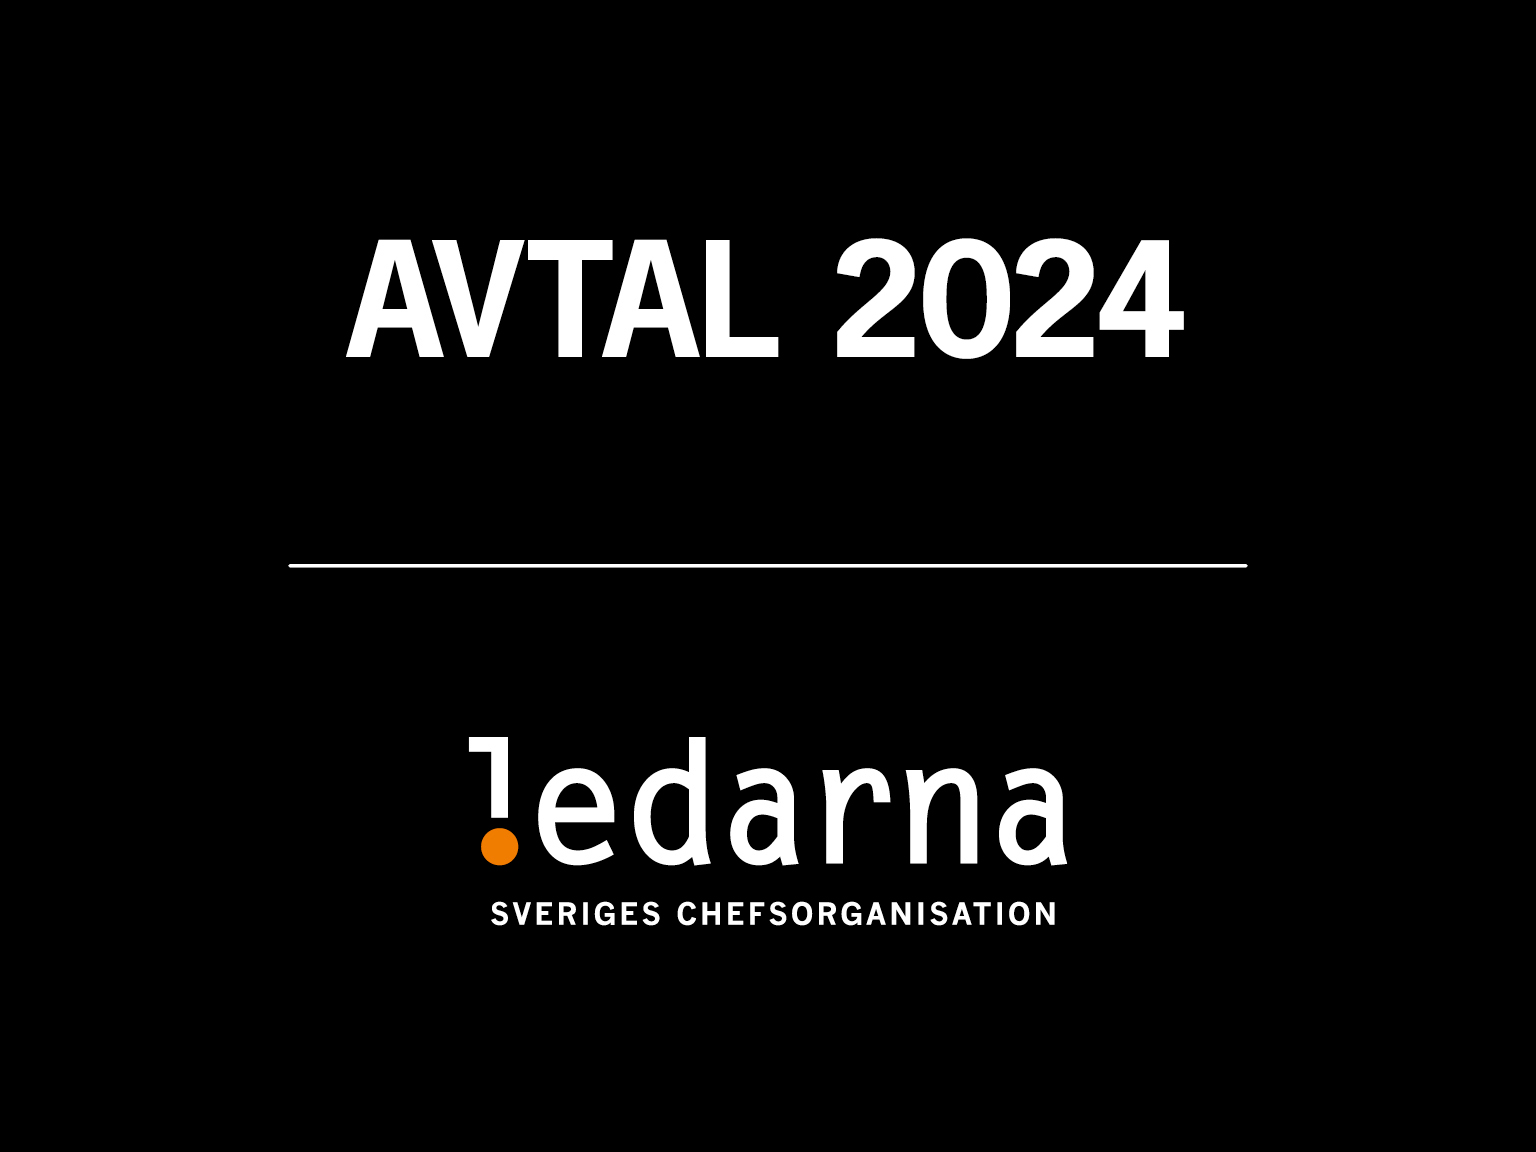 Ledarnas logotyp och text: Avtal 2024.